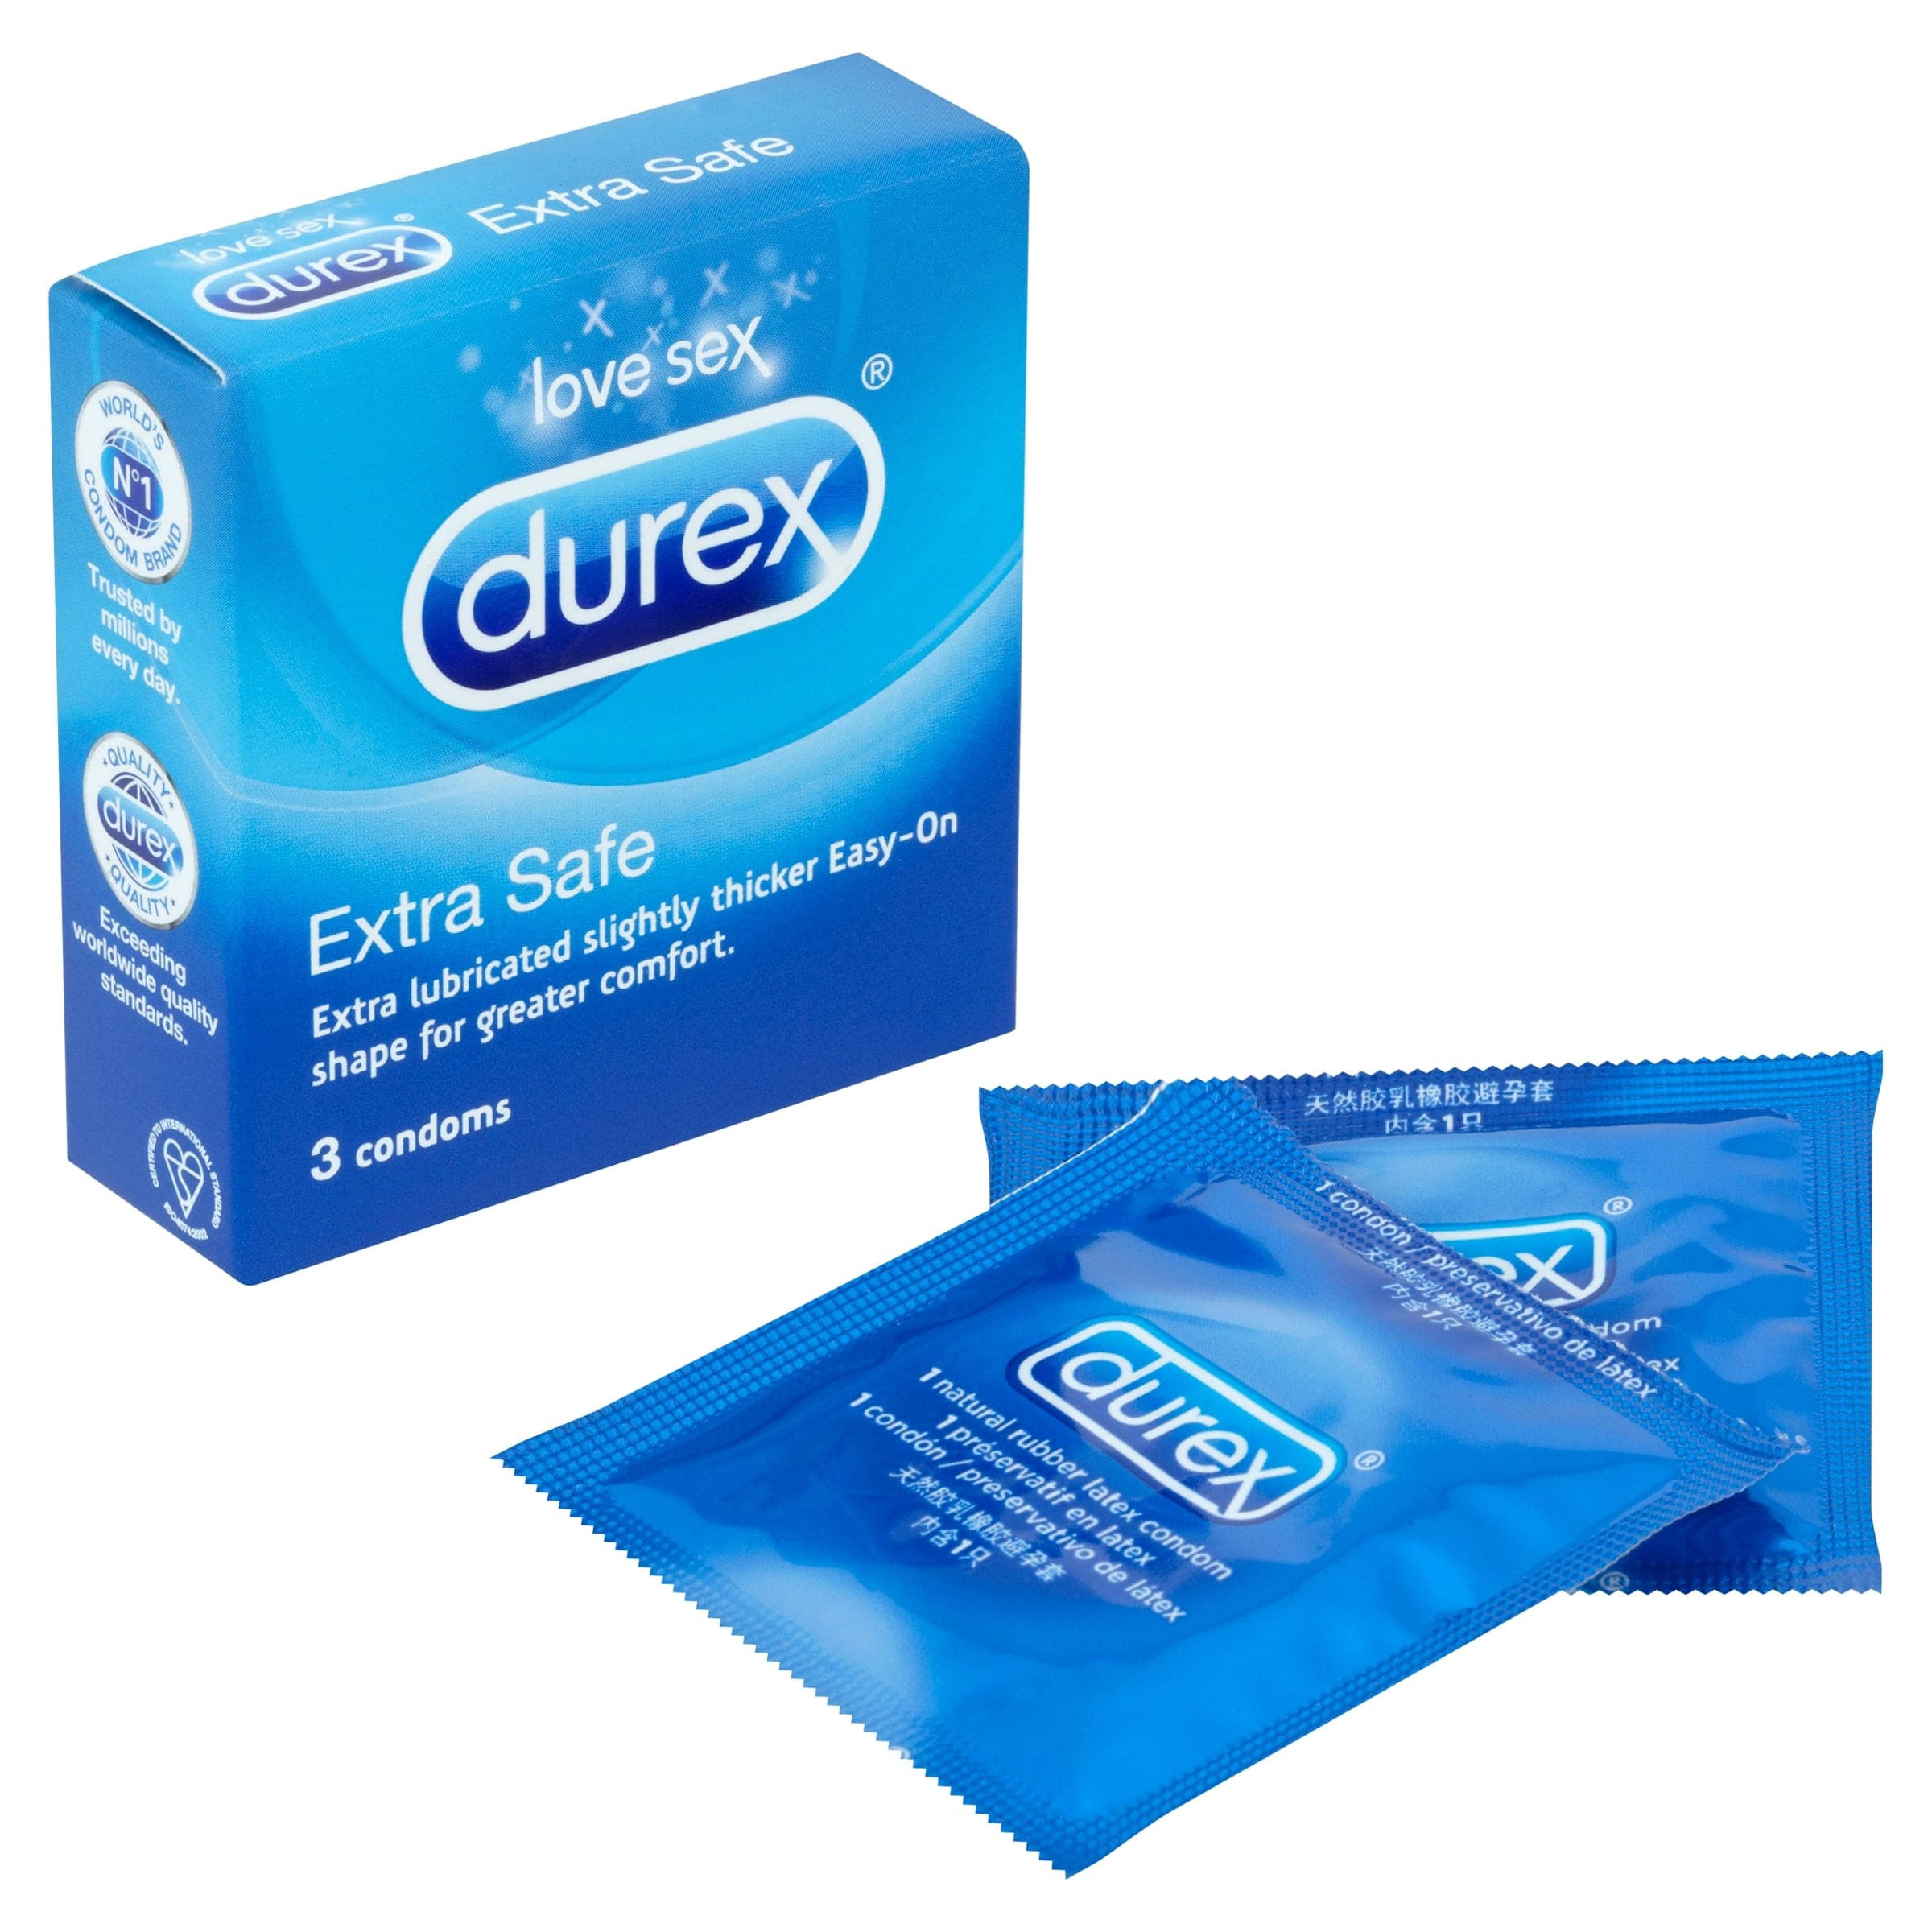 Durex Condoms - Extra Safe, Pack of 3